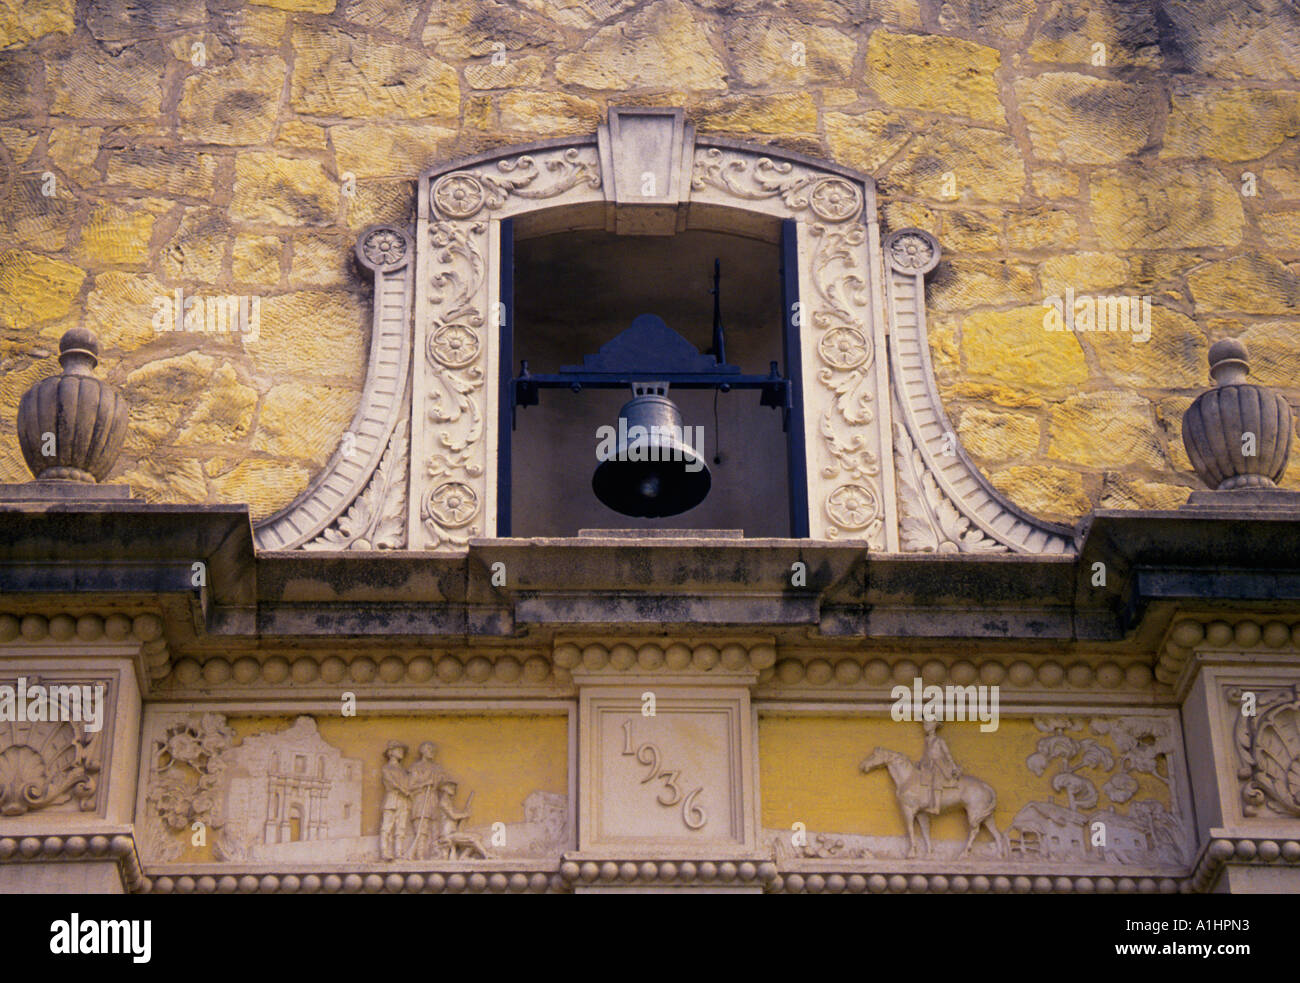 Die Alamo Mission Glocke in San Antonio, Texas, USA. Texas Revolution. Mission San Antonio de Valero, Davy Crockett, Jim Bowie und William B Travis Stockfoto